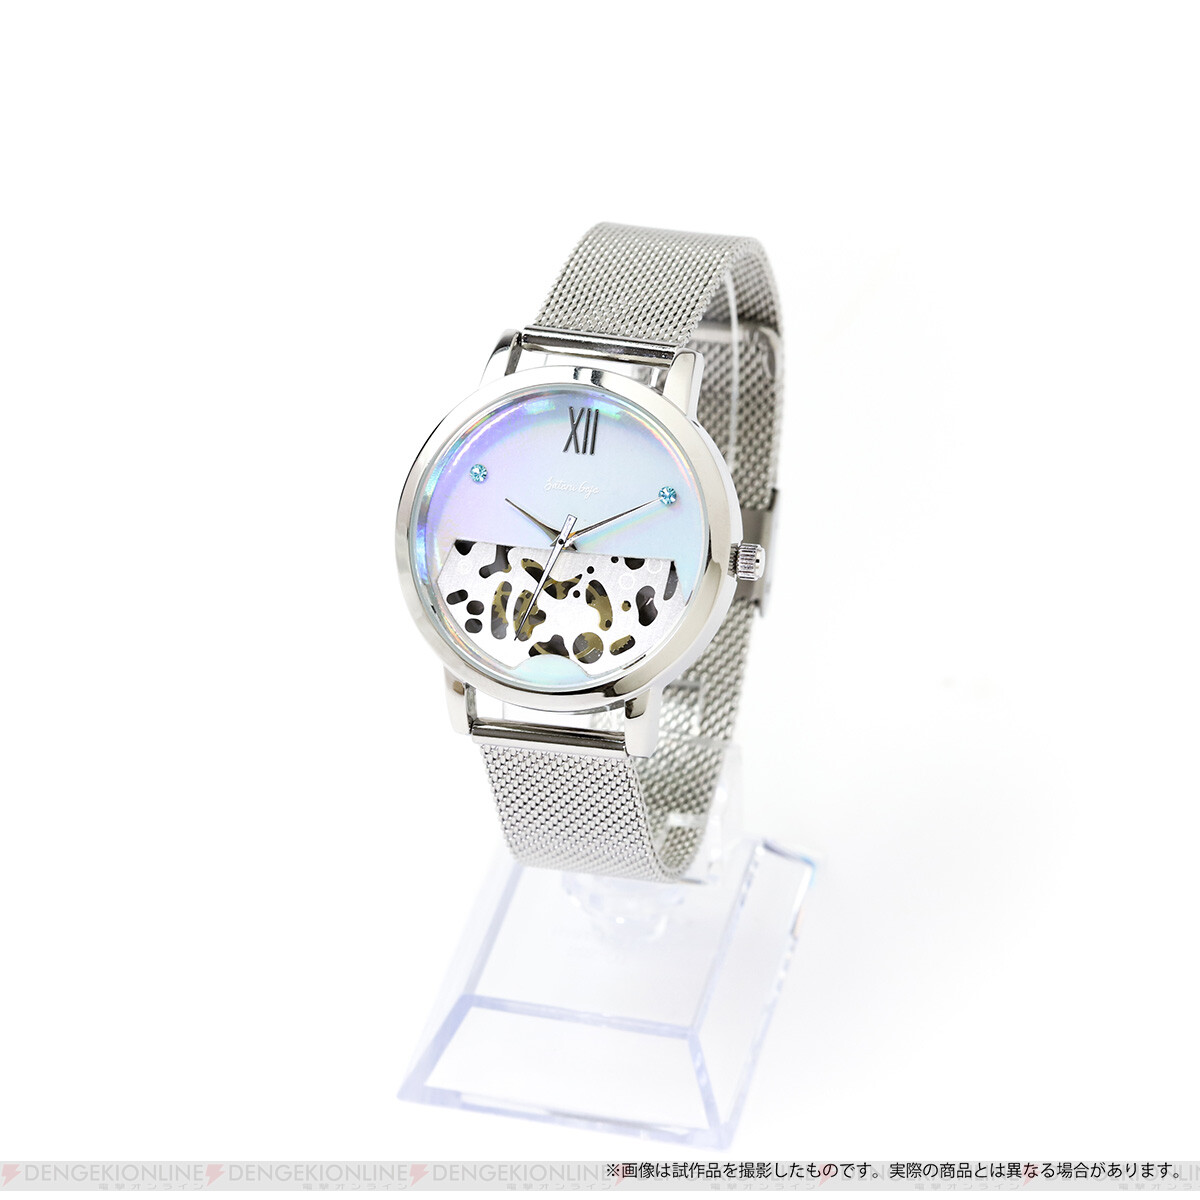 画像6 6 アニメ 呪術廻戦 の腕時計が完全受注生産で予約受付中 電撃オンライン